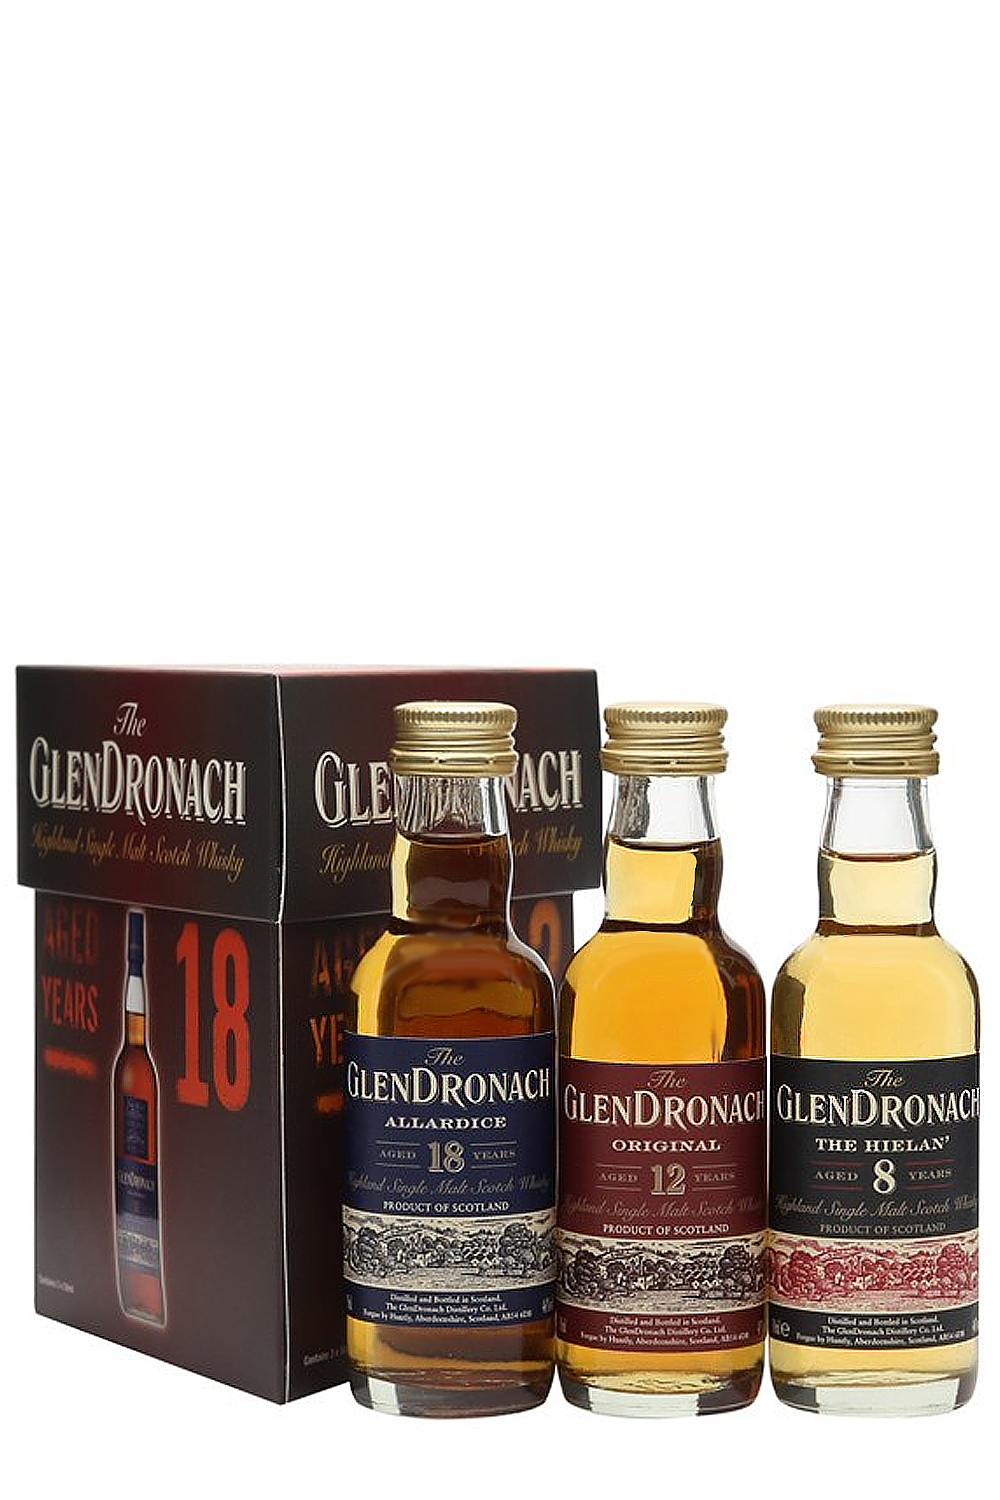 Glendronach Miniaturen Tri-Pack Whisky3 x 0.05 Liter (8/12/18) -  Getraenke-Handel.com ist Ihr preiswerter Spirituosen Online